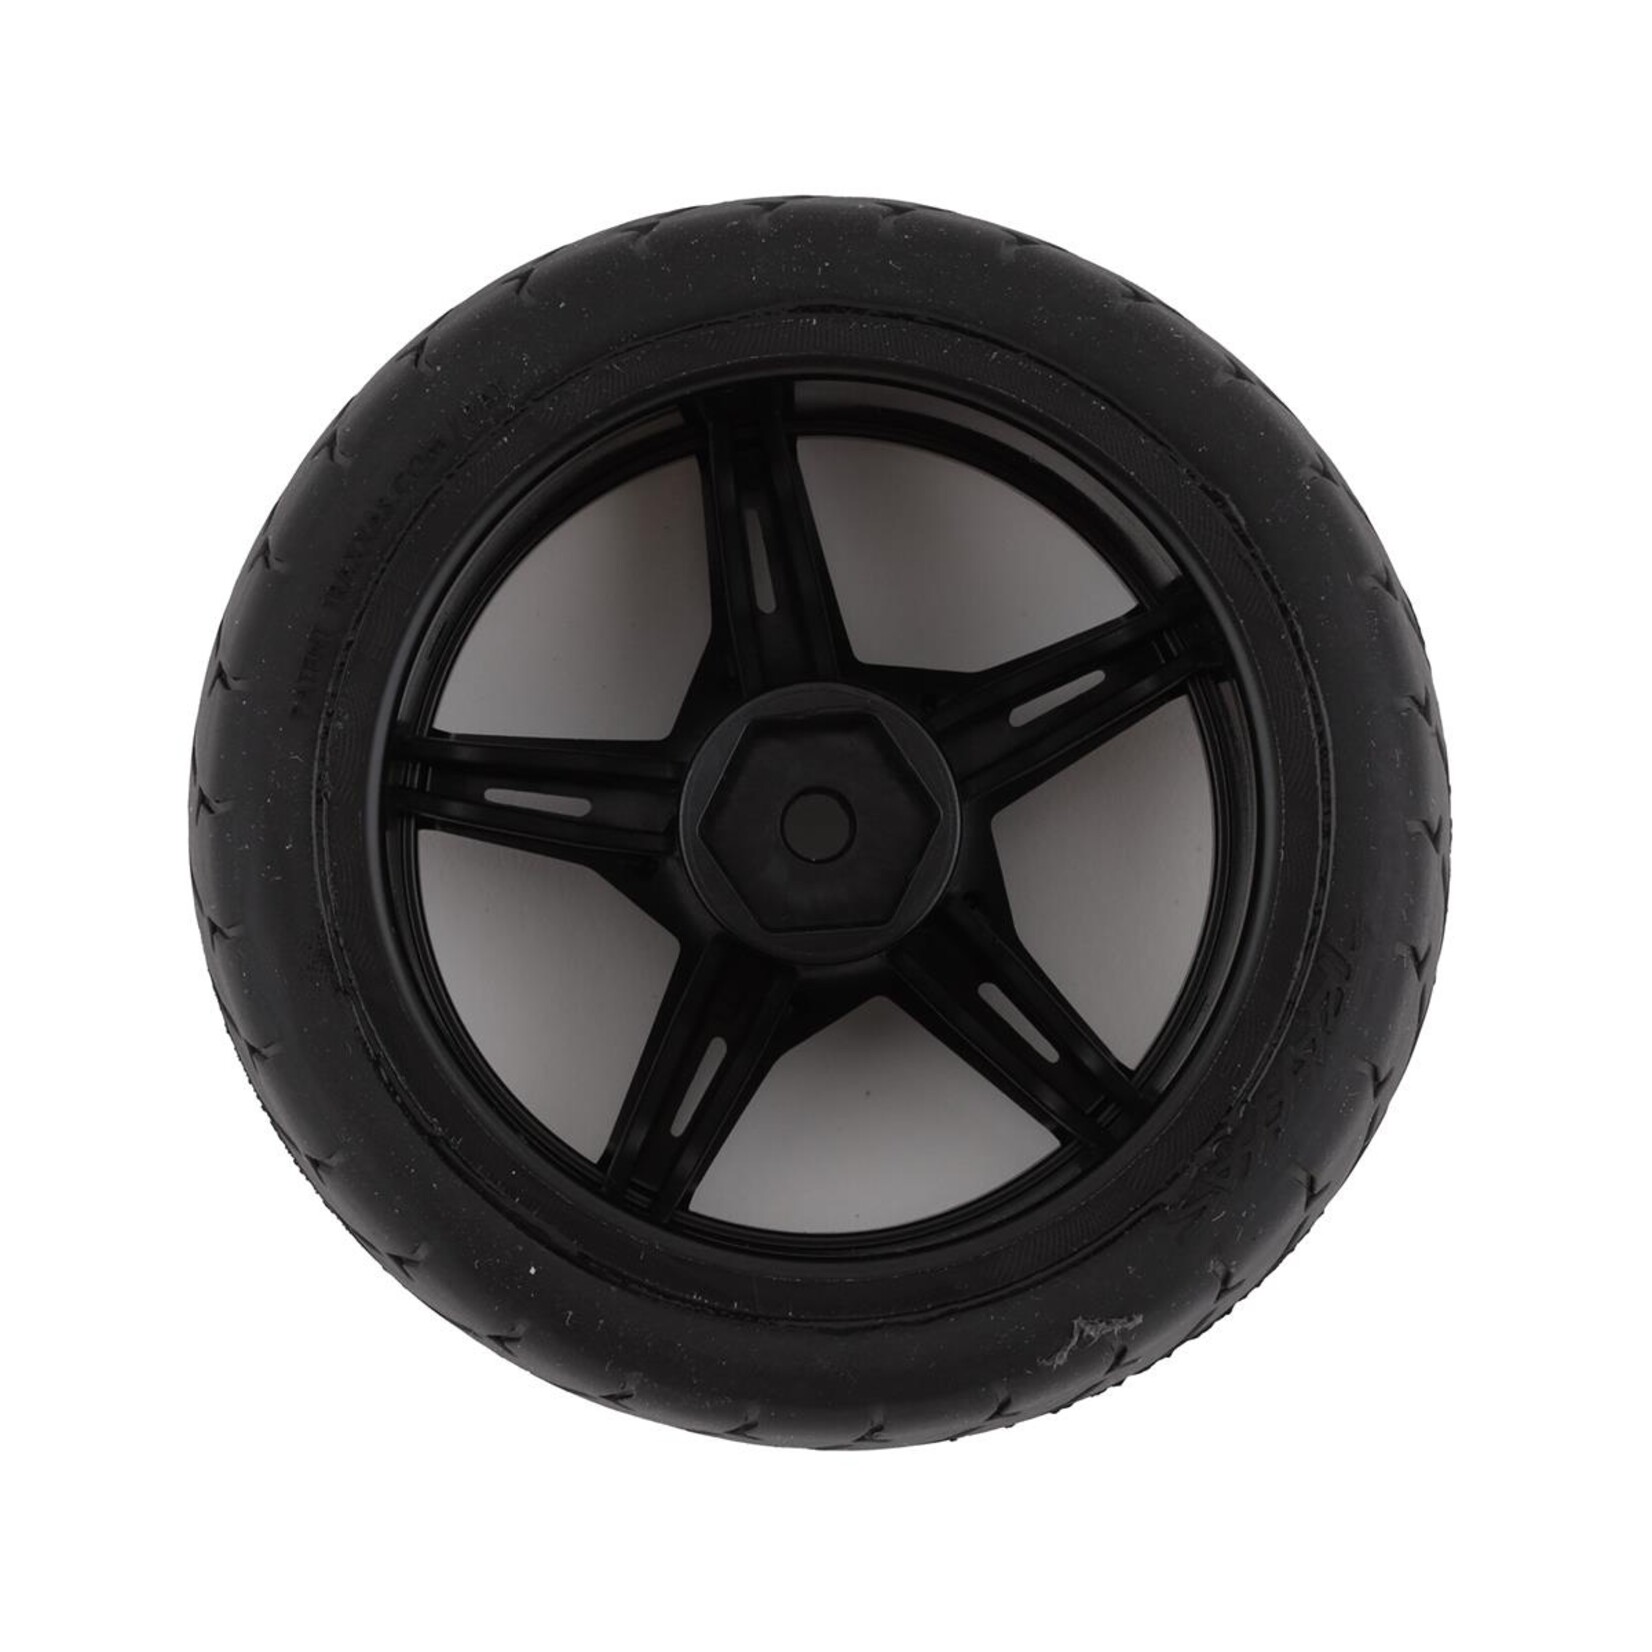 Traxxas Traxxas 2.1" Response Pre-Mounted Front Tires w/Split-Spoke Wheels (Black Chrome) #9370